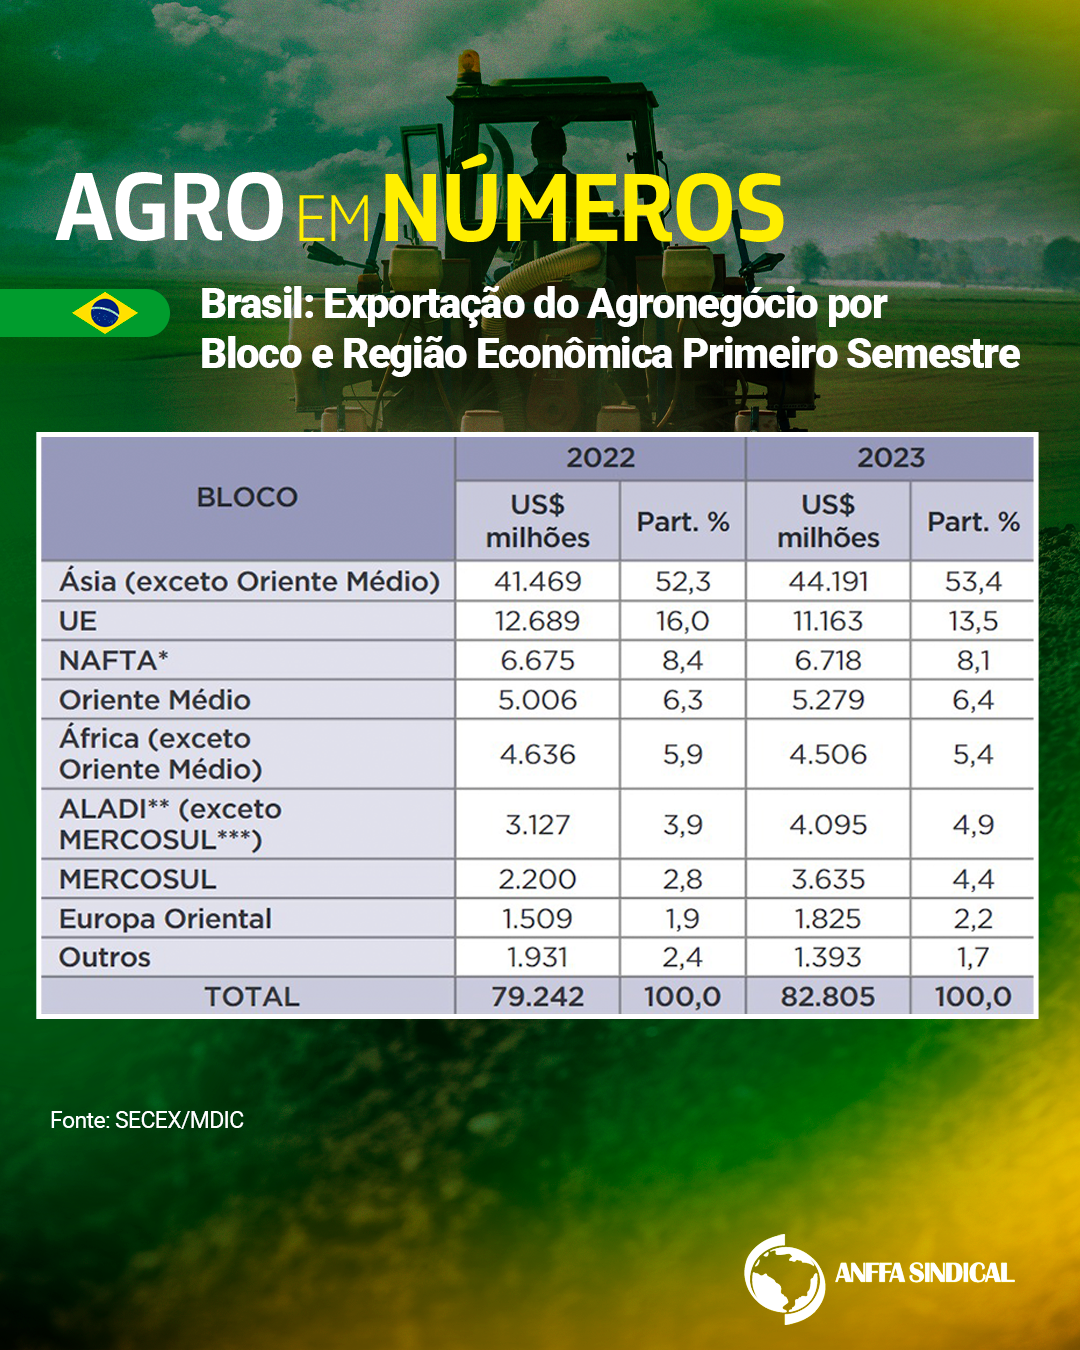 Brasil: Exportação do Agronegócio por bloco e região econômica no primeiro semestre